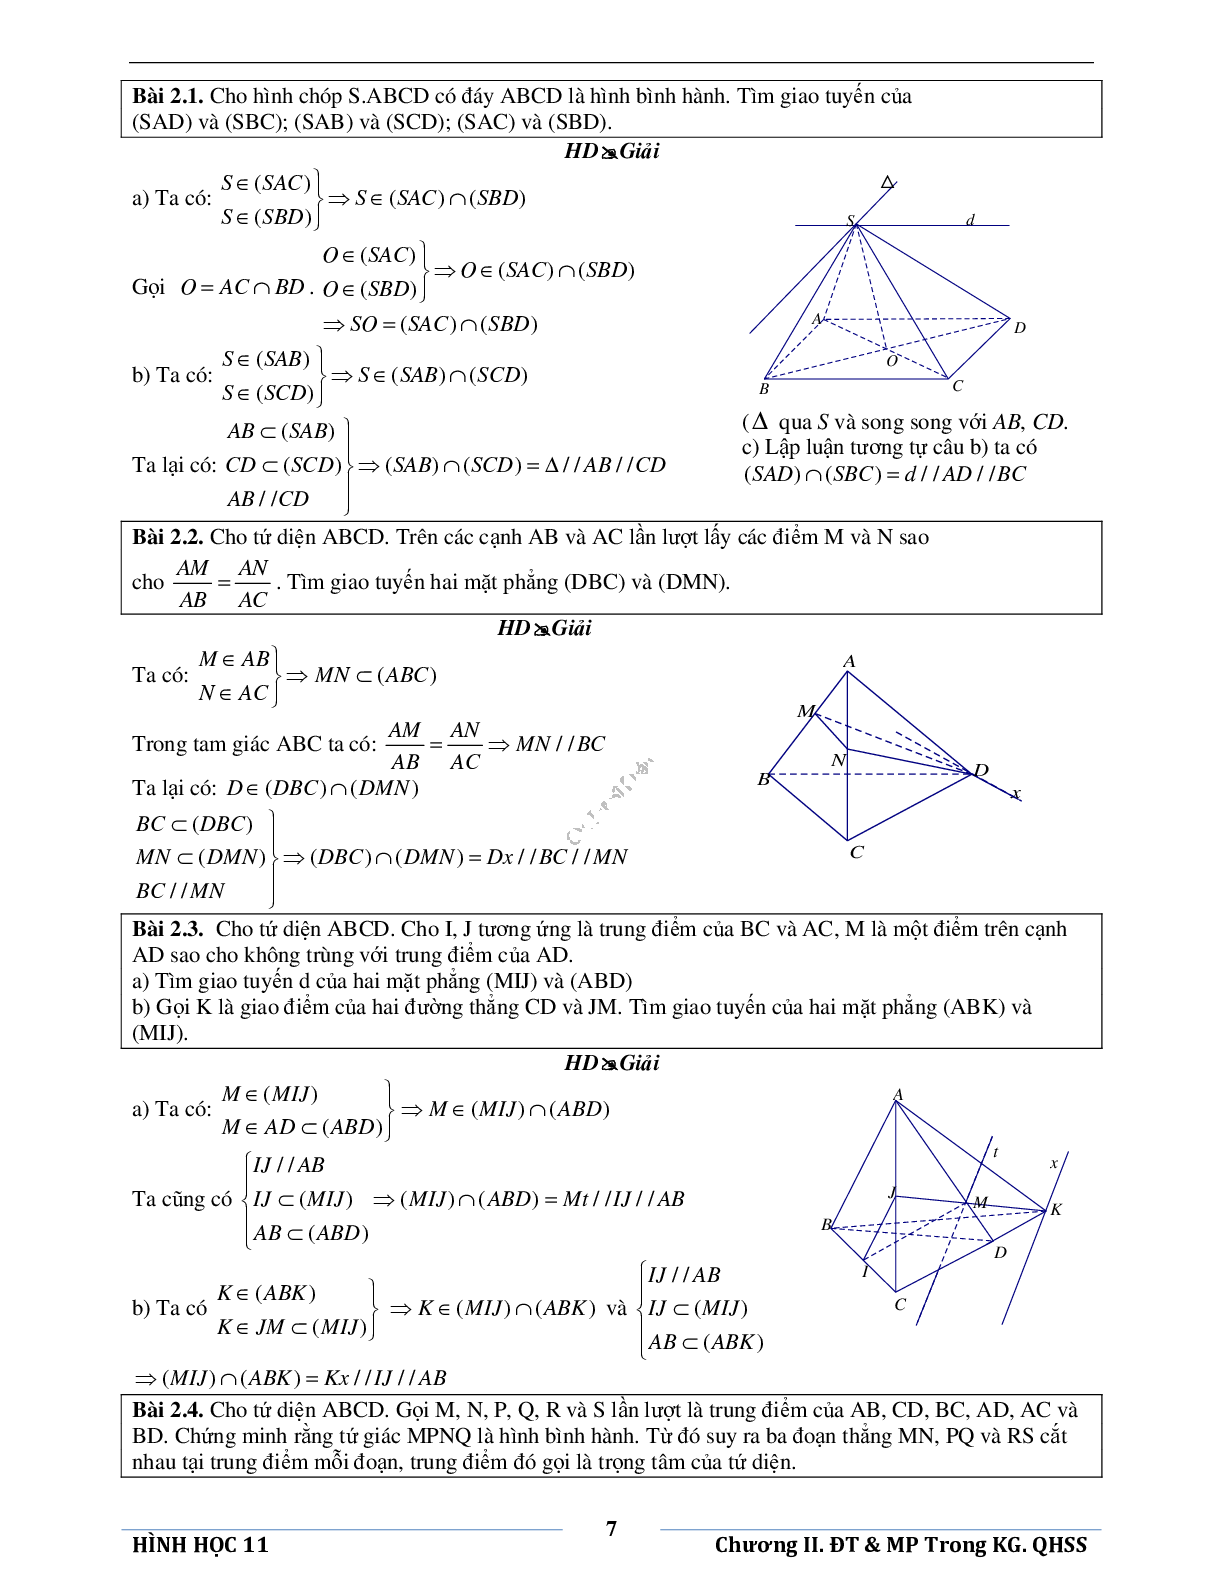 Đường thẳng và mặt phẳng trong không gian quan hệ song song (trang 10)